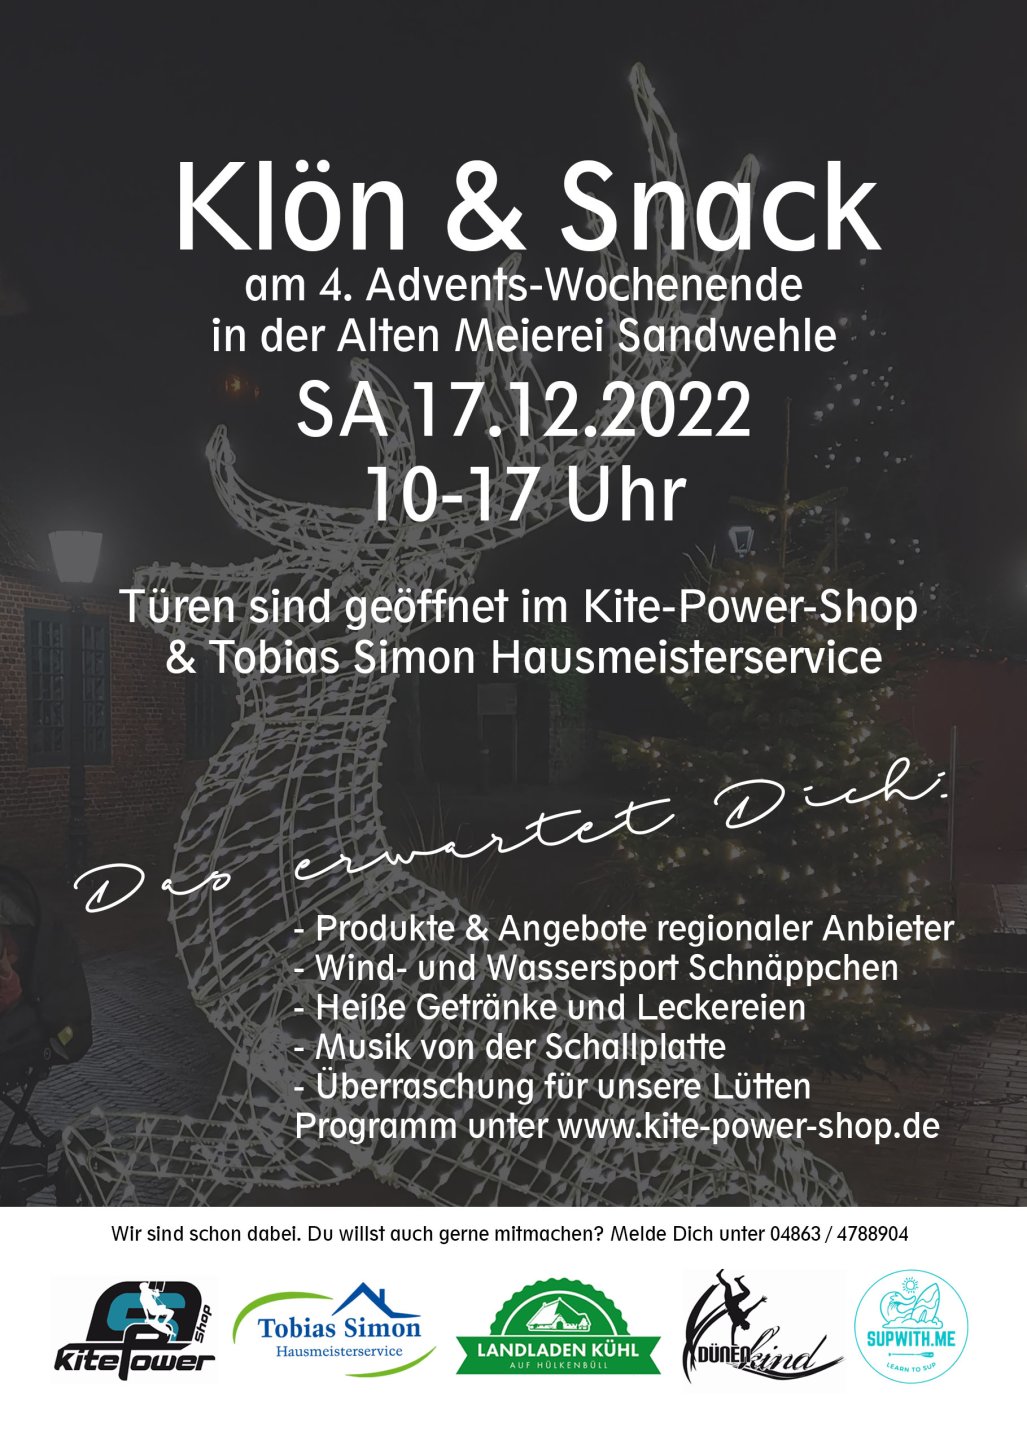 Kite-Power-Shop Klön & Snack am 17.12.2022 Alte Meierei Sandwehle